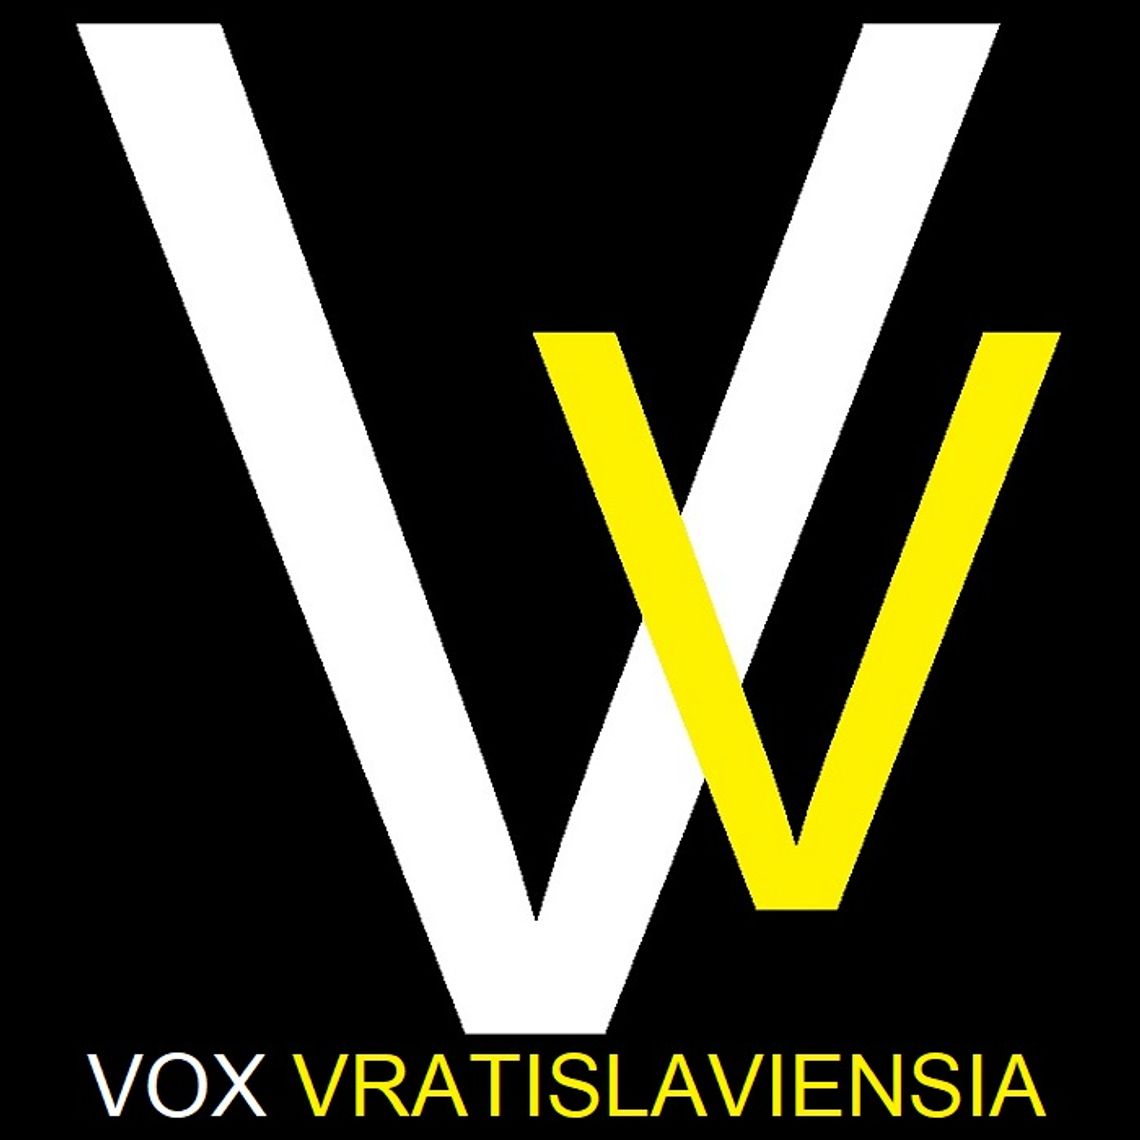 Przewodnik miejski po Wrocławiu - Vox Vratislaviensia